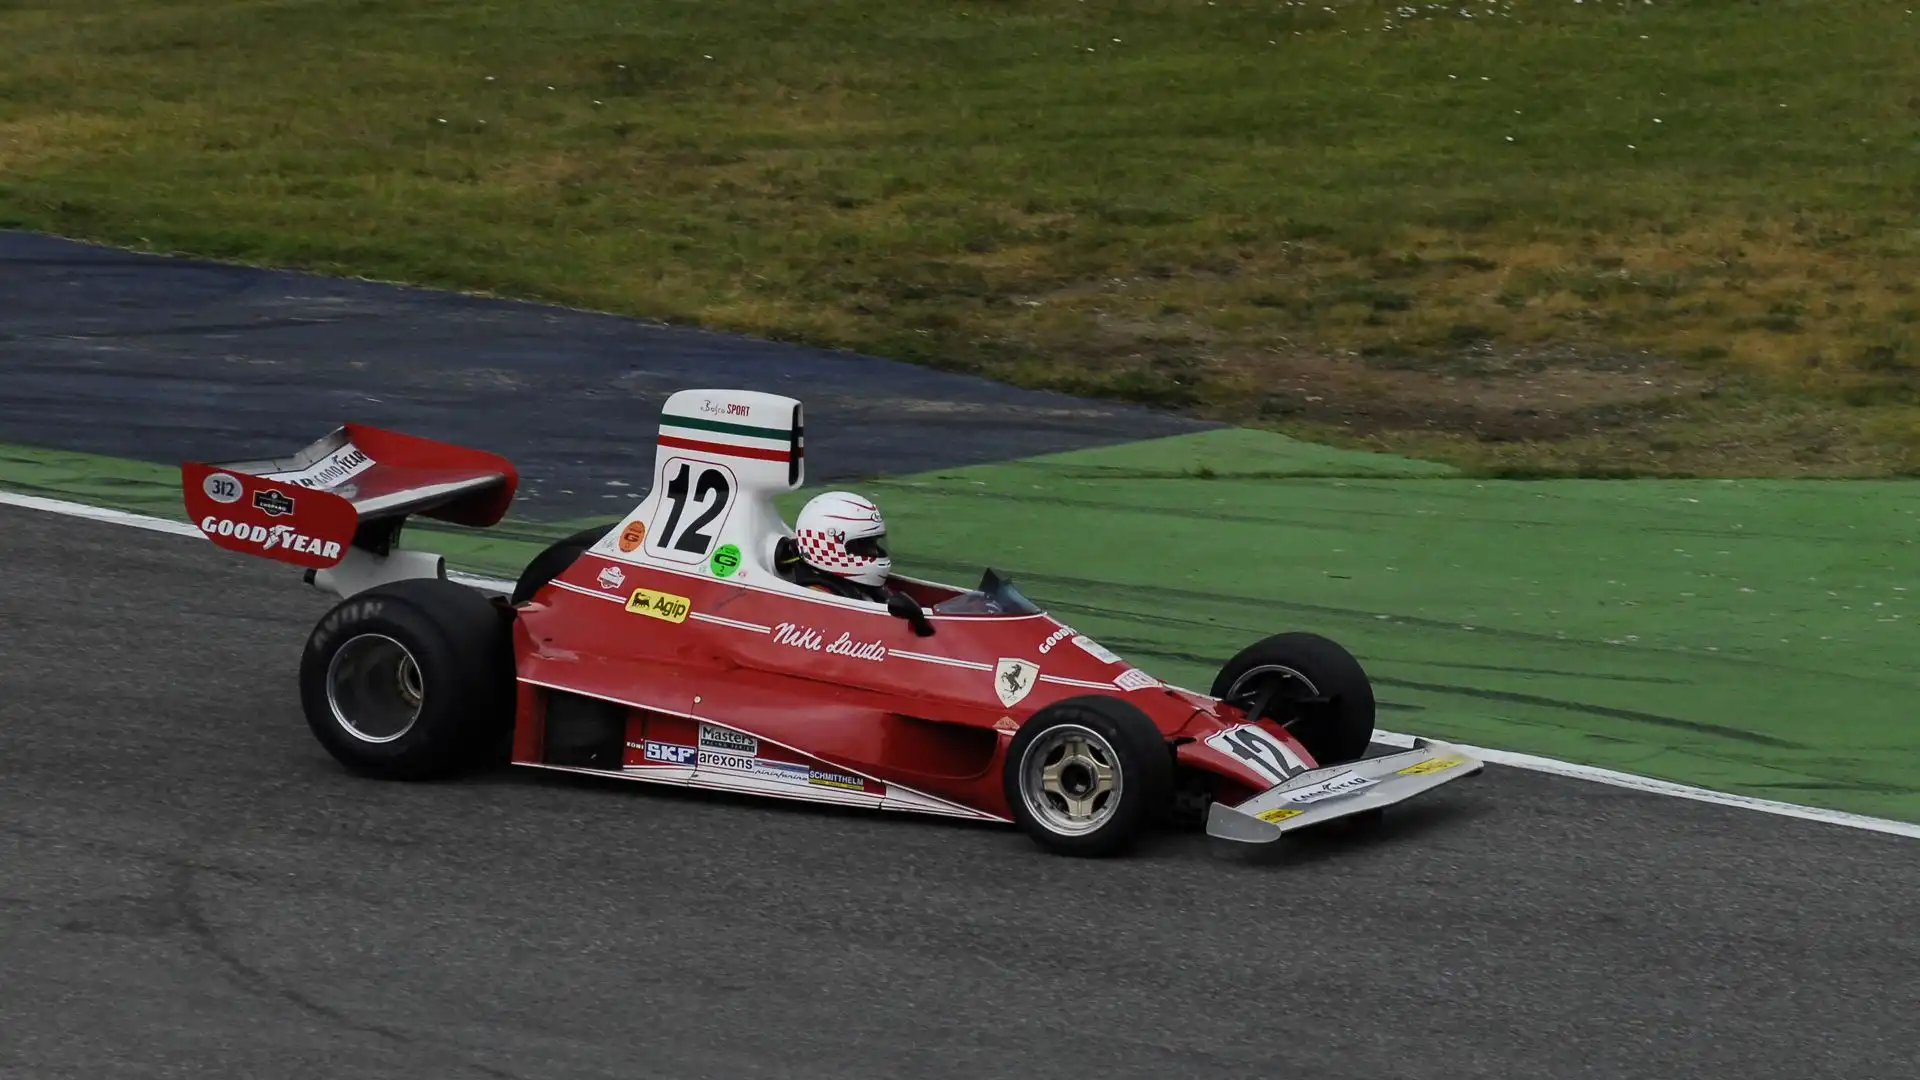 Splendida la Ferrari 312T che Niki Lauda, nel 1975, ha portato alla conquista del campionato del mondo di F1